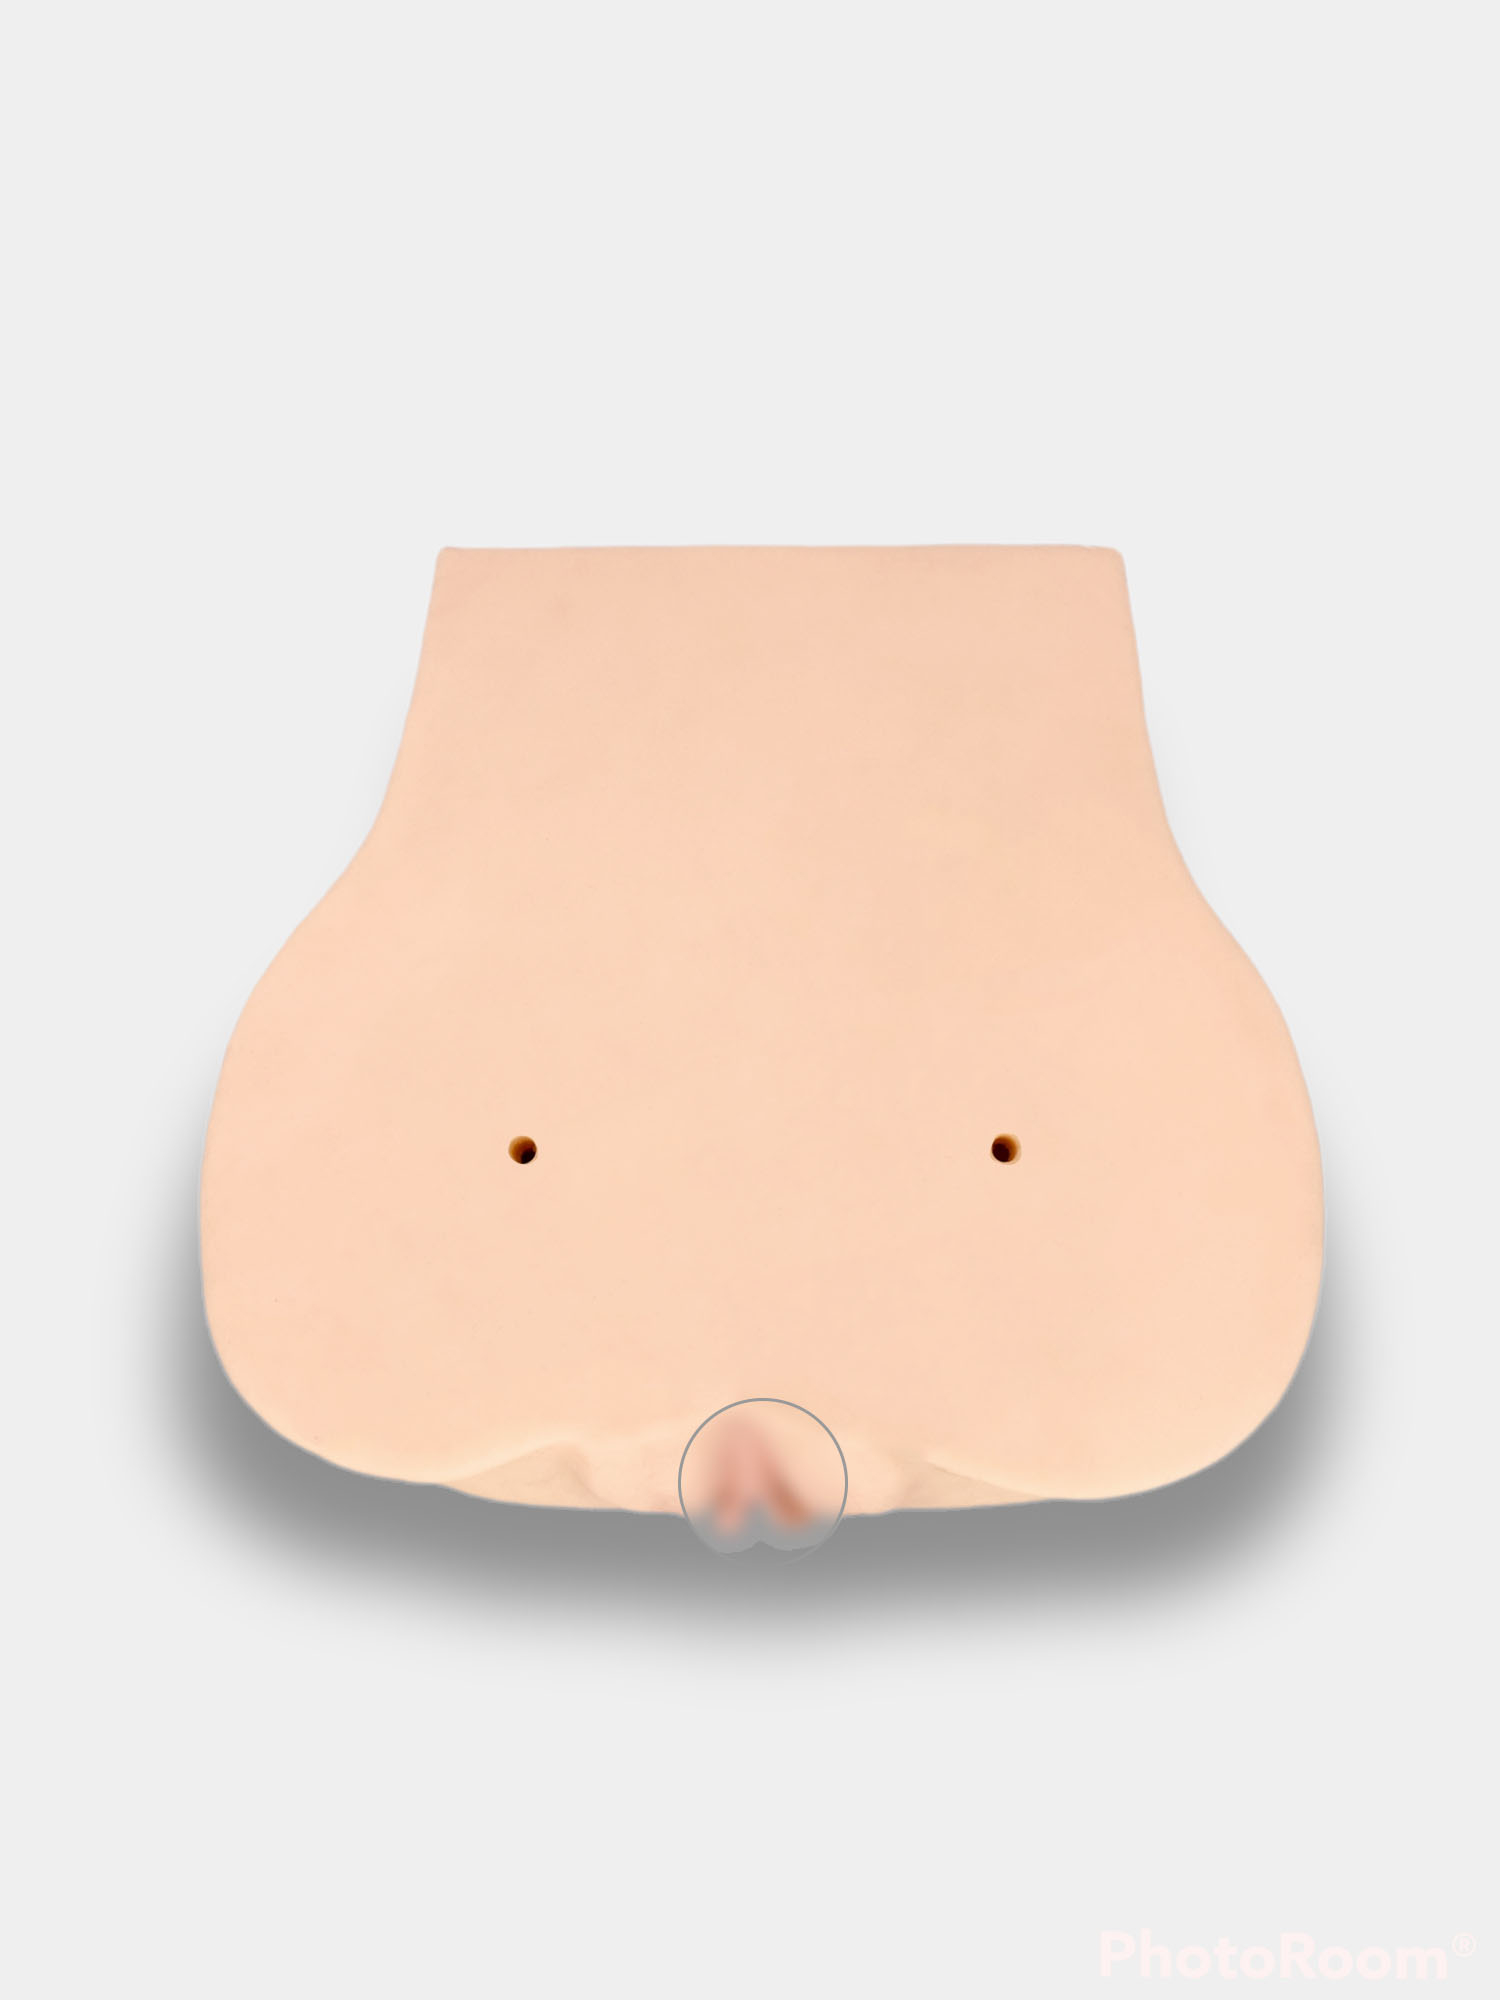 Мужской мастурбатор вагина и анус натуральных размеров 3 вида, секс игрушка  для взрослых купить по цене 2999 ₽ в интернет-магазине KazanExpress